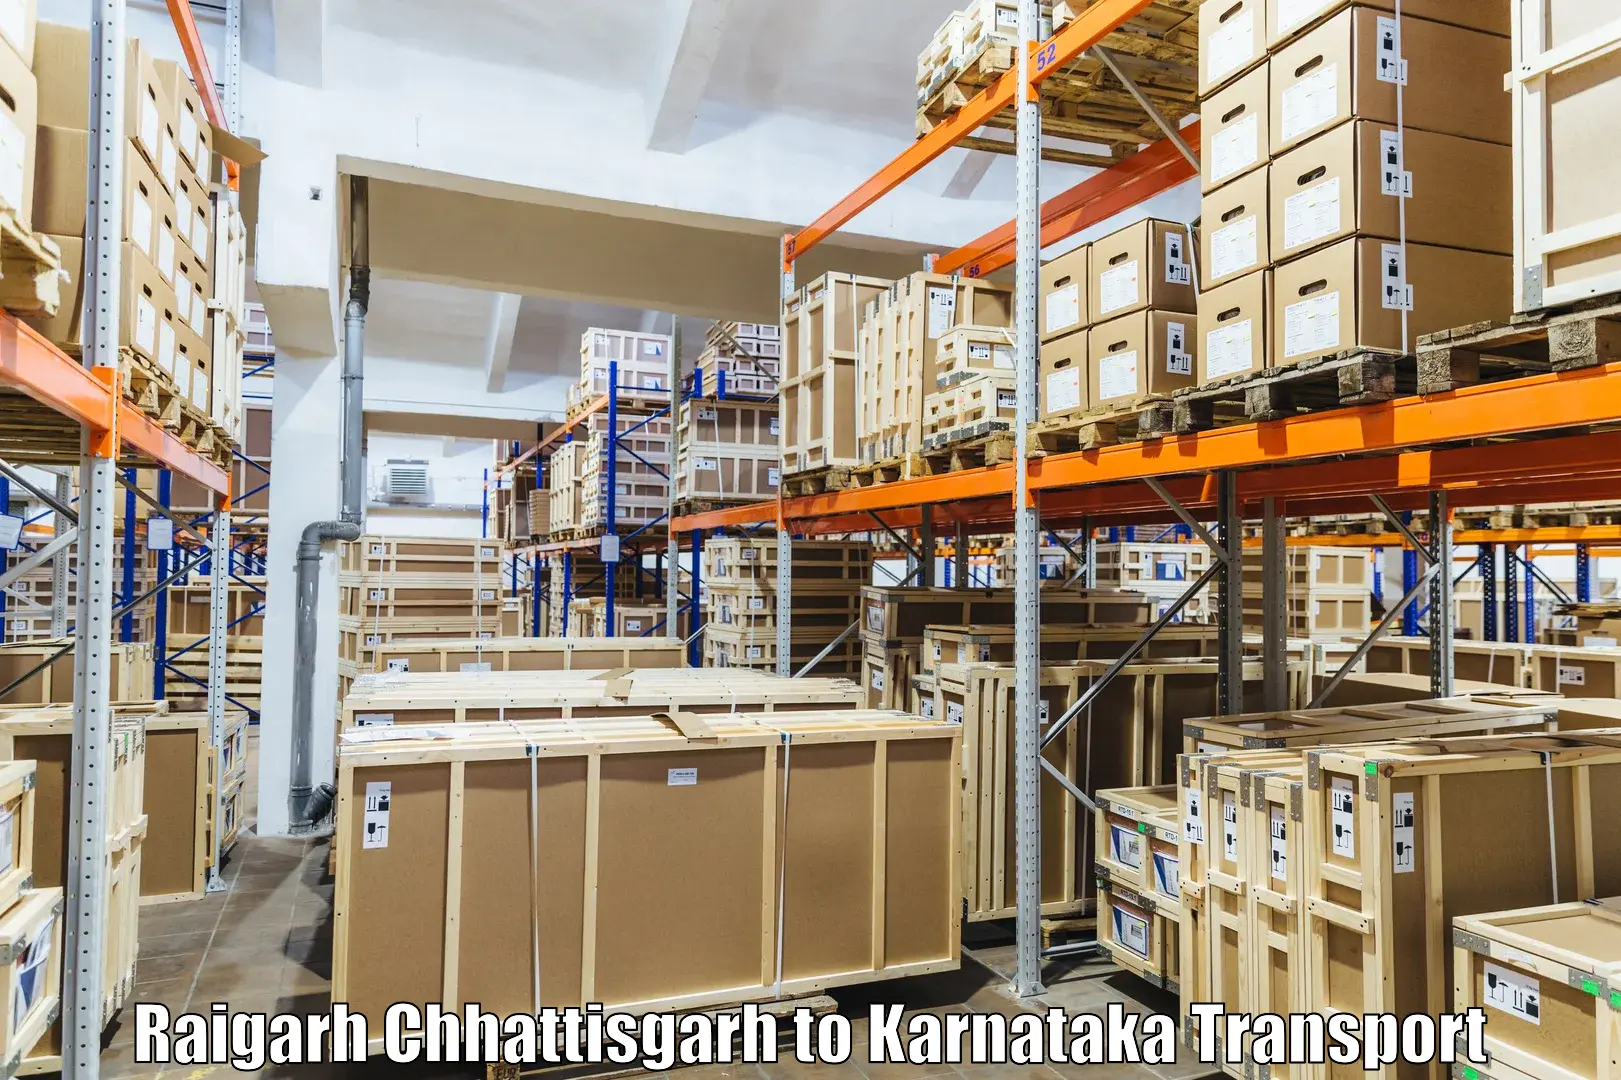 Delivery service Raigarh Chhattisgarh to Indi